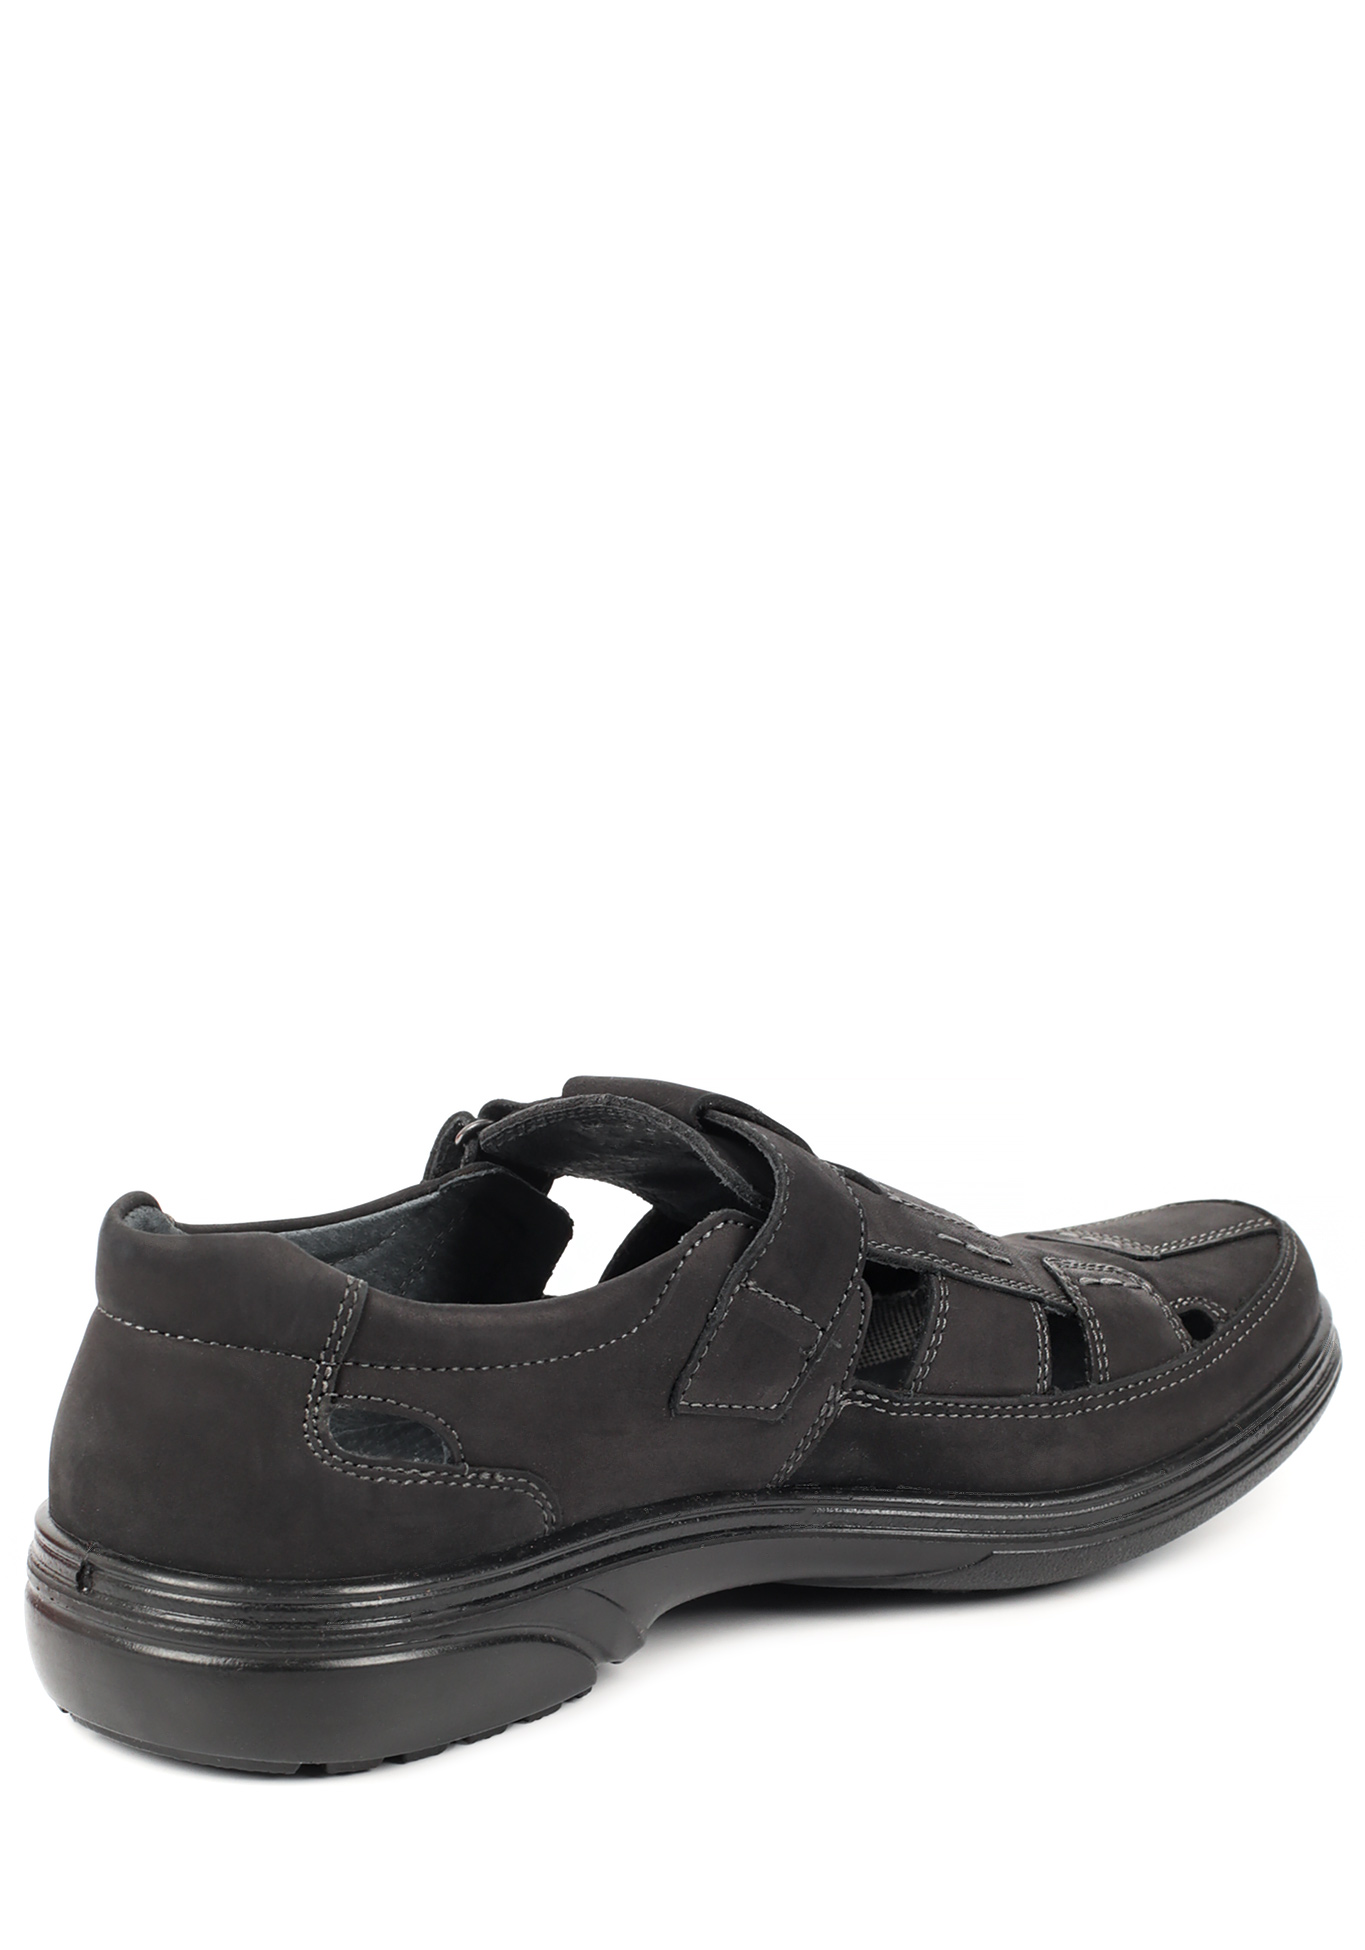 Туфли летние мужские "Ричи" Marko, размер 41, цвет черный - фото 3